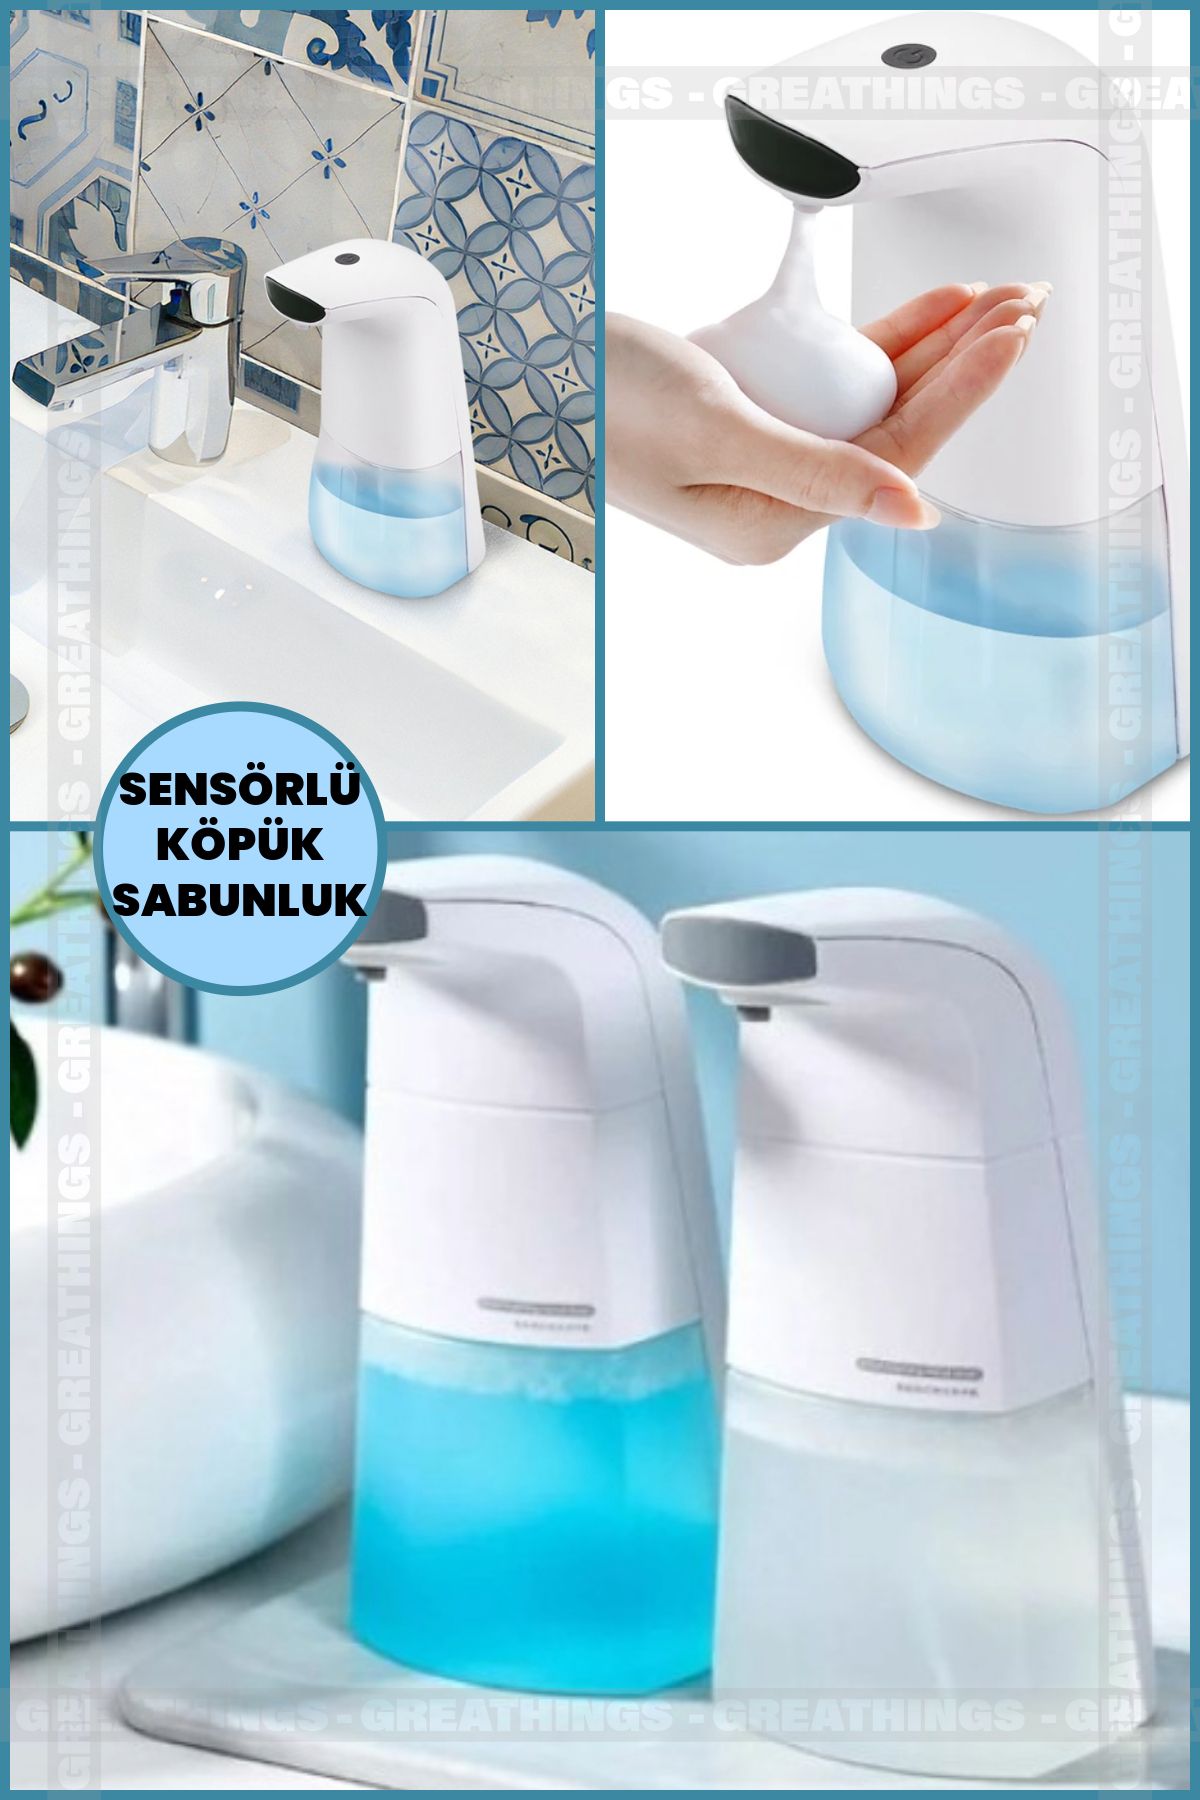 Greathings Pilli Sensörlü Köpük Sabunluk Köpük Sabun Dispenseri Otomatik Sıvı Banyo Mutfak Sabunluk